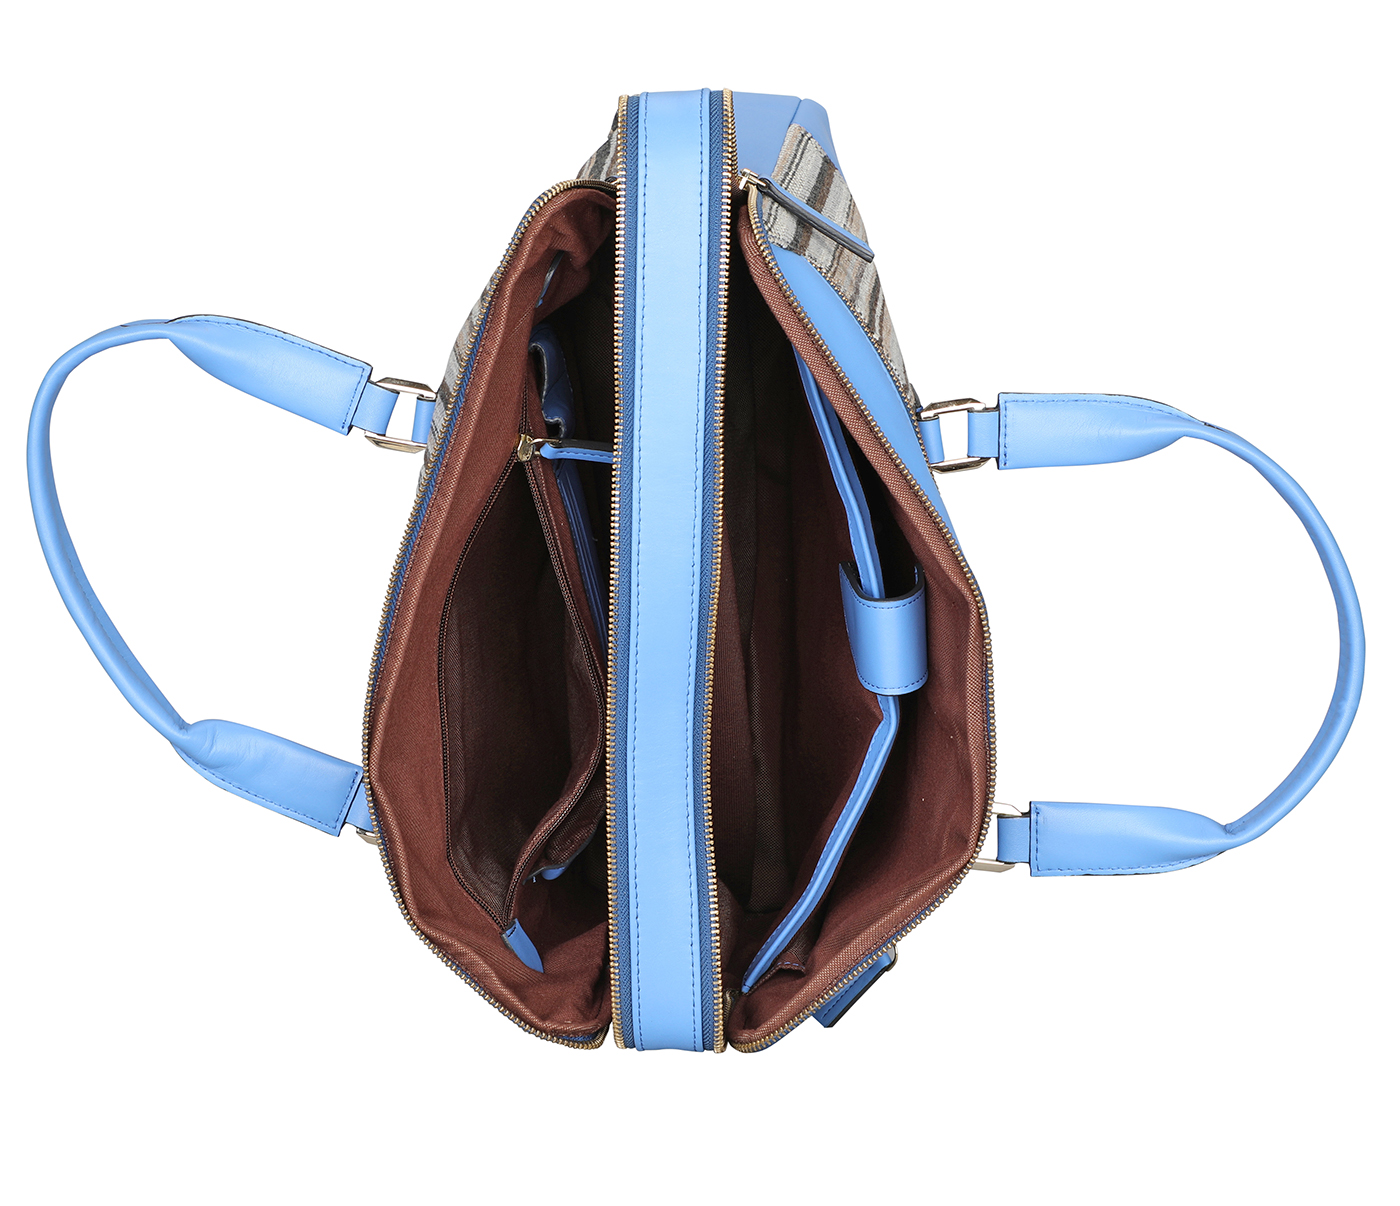 F79-Alvaro-Laptop cum portfolio bag in Multi colored Stripes print fabric with Genuine Leather combination - LT BLUE